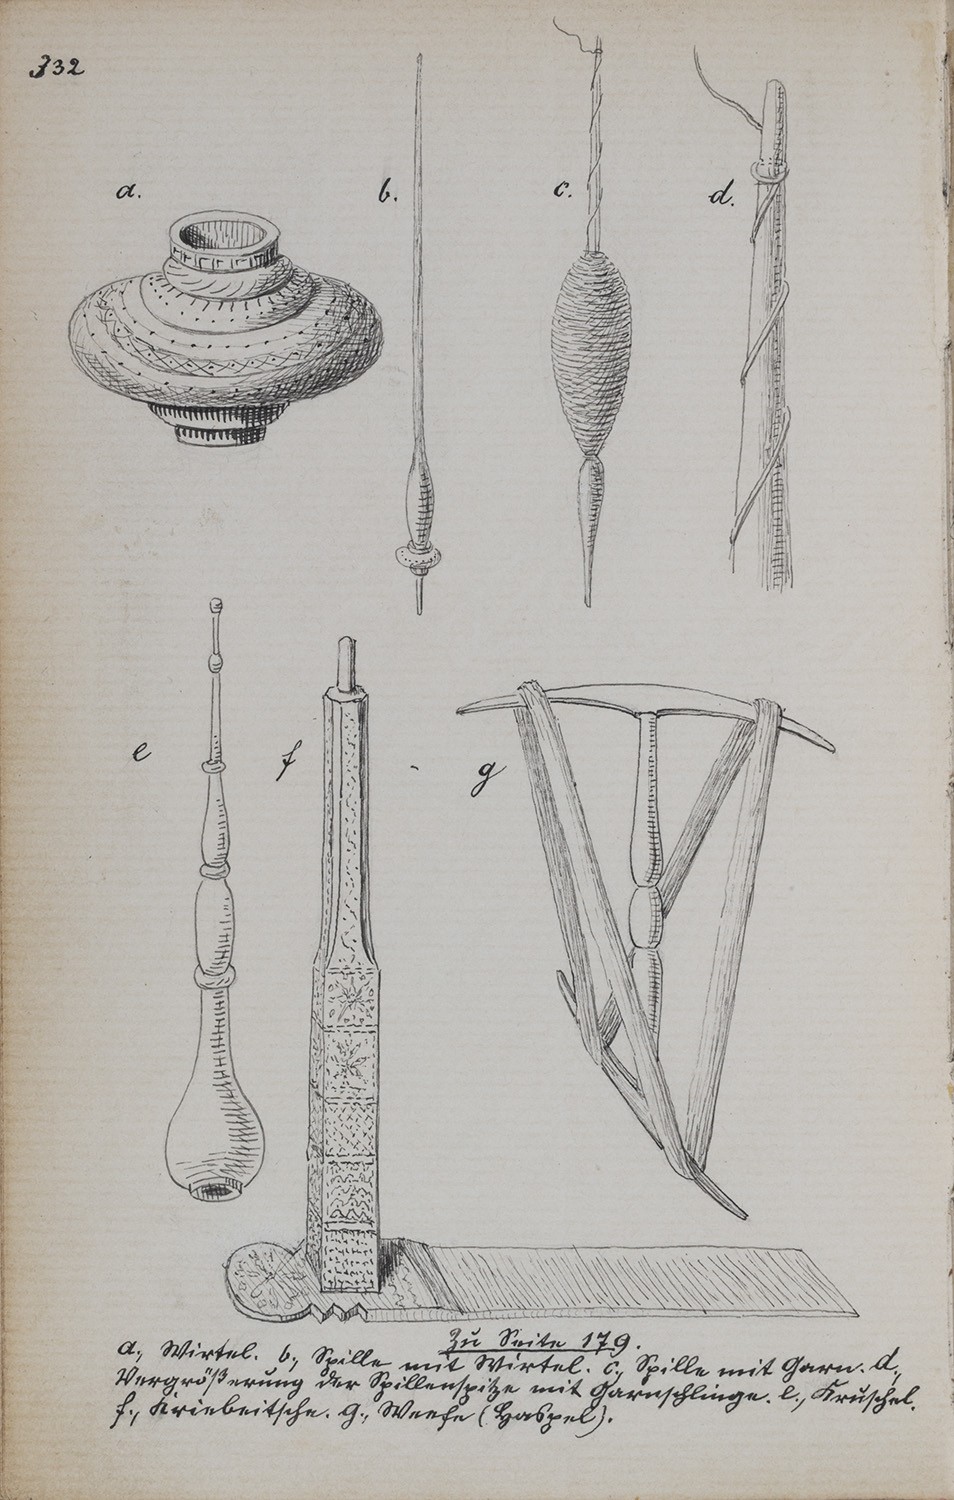 Gahry (Kr. Cottbus): Sieben Zeichnungen von Spinnwerkzeugen (Landesgeschichtliche Vereinigung für die Mark Brandenburg e.V., Archiv CC BY)